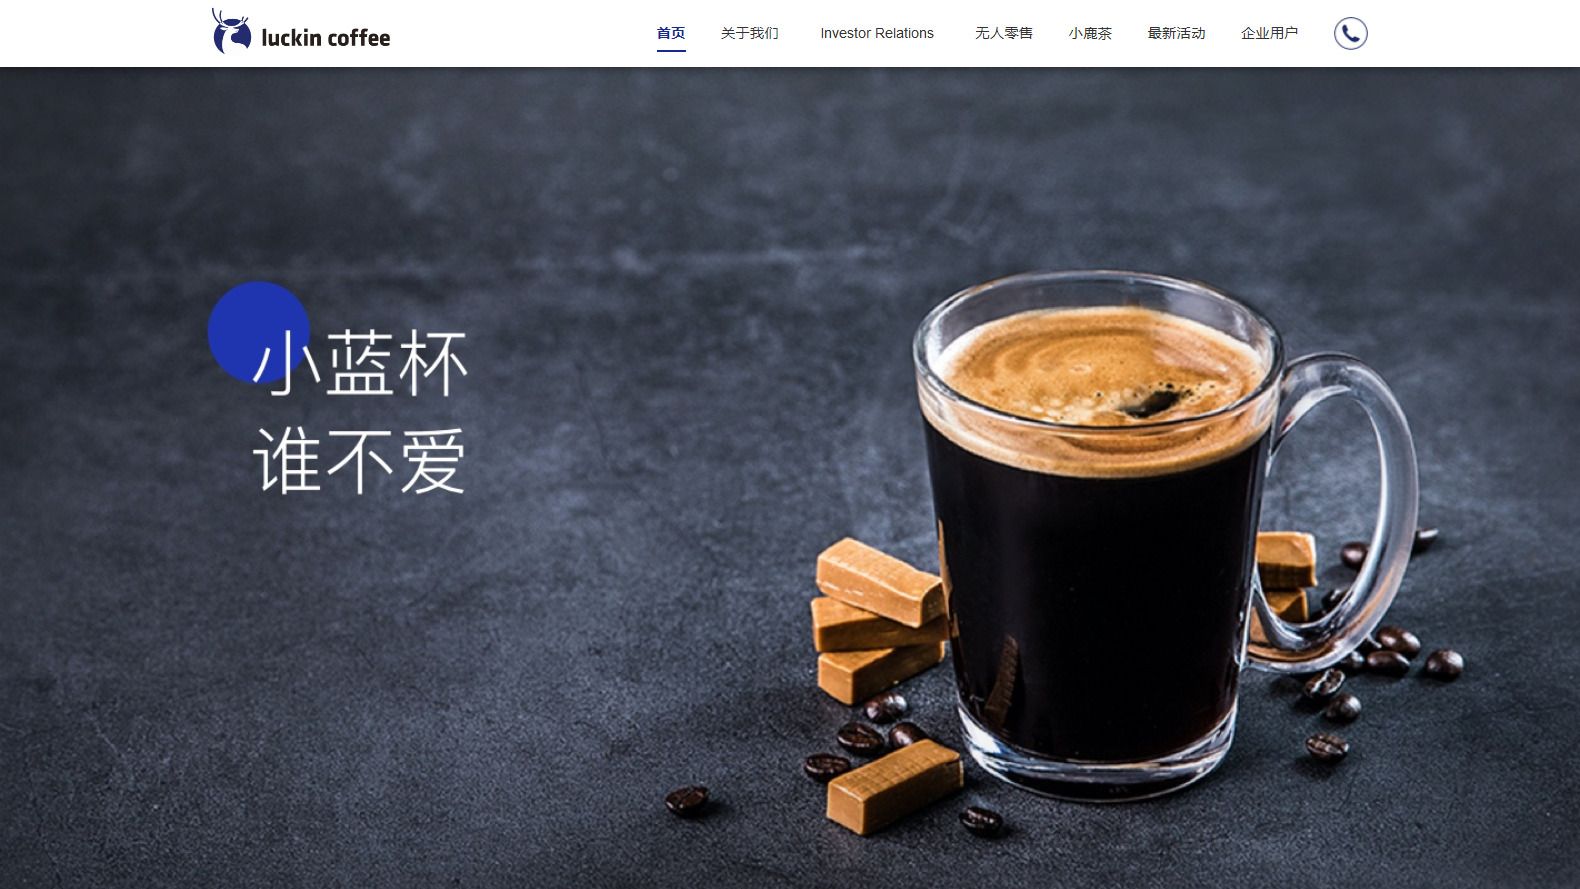 中国･新興カフェ粉飾に2回目の｢上場廃止通告｣ 決算報告書提出できず社内調査も遅滞の混乱 | 「財新」中国Biz＆Tech | 東洋経済オンライン